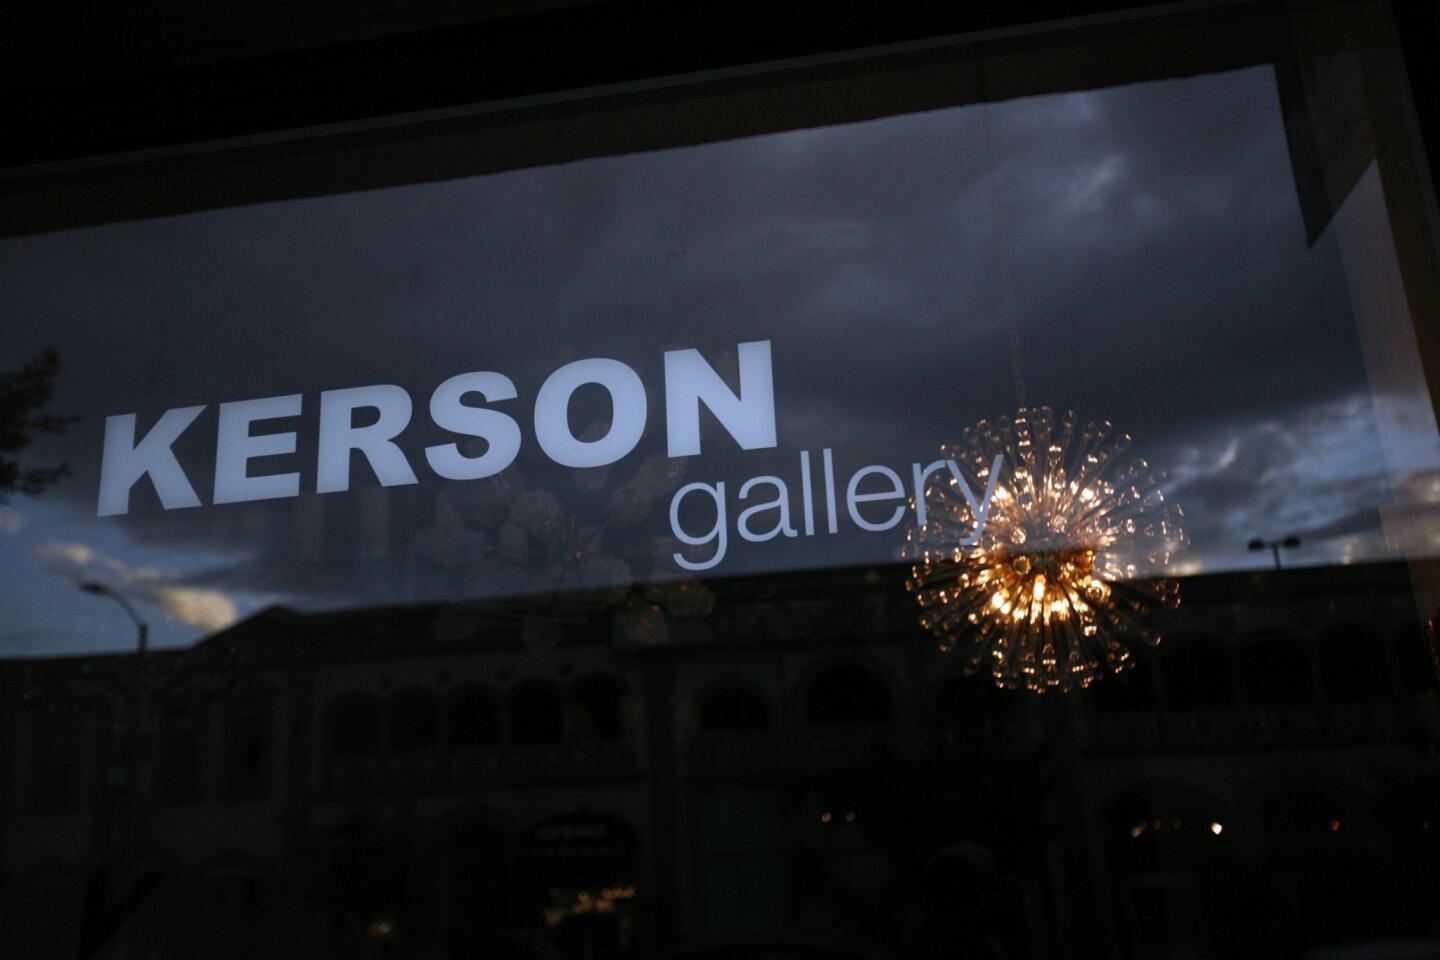 Kerson Gallery